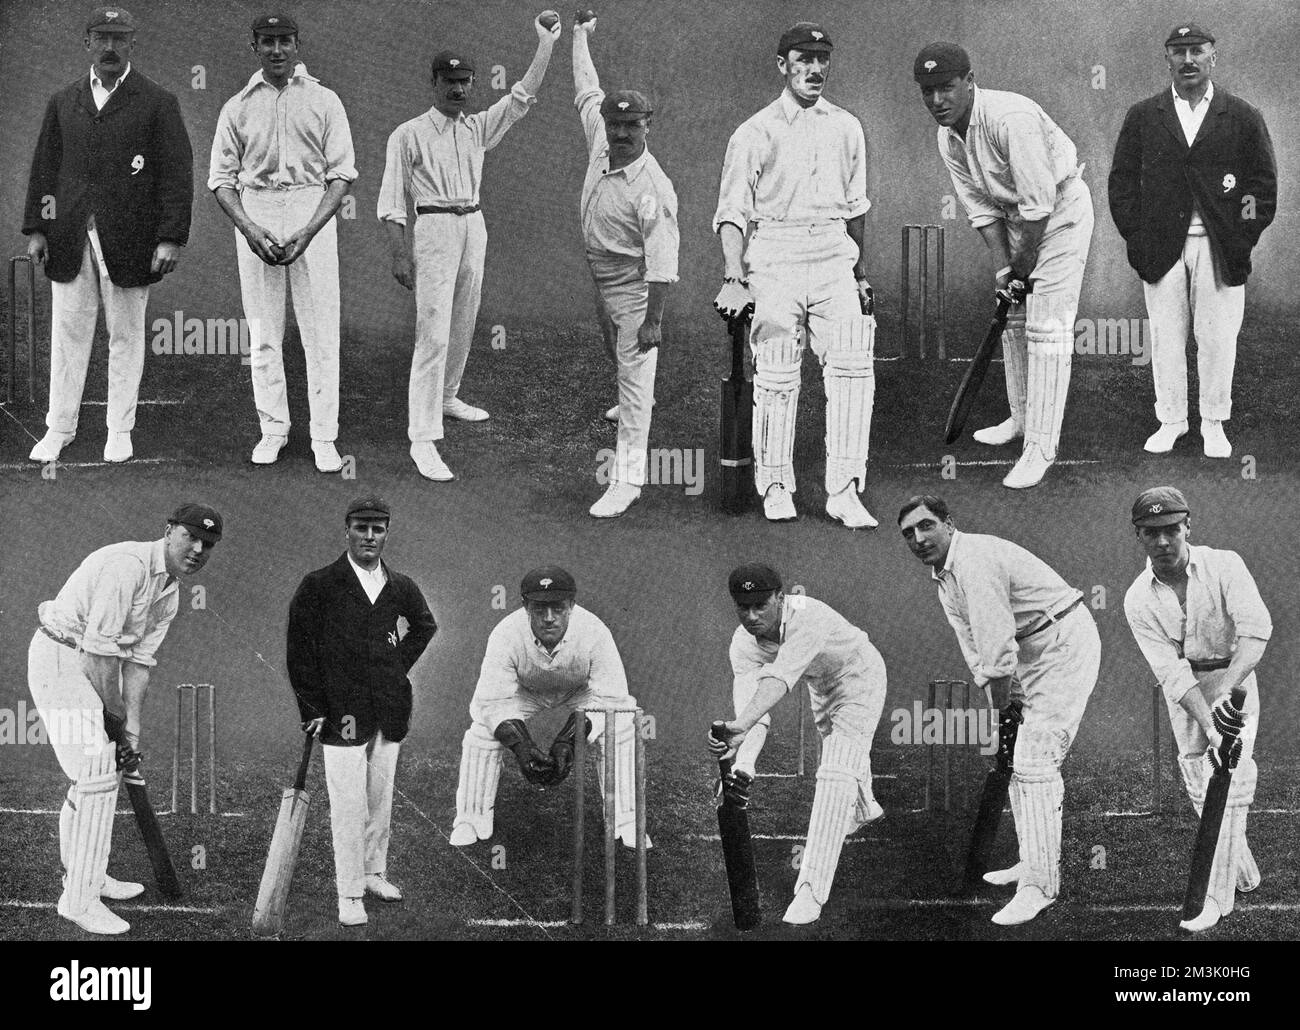 Foto mit 13 Mitgliedern des Yorkshire County Cricket Teams für die Saison 1912. Yorkshire gewann in diesem Jahr die County Championship. Obere Reihe, von links nach rechts: Sir A.W. Weiß (Kapitän), M.W. Booth, D. Denton, S. Haigh, W. Rhodes, W. E. Bates, G.H. Hirst. Untere Reihe, von links nach rechts: A. Drake, R. Kilner, A. Dolphin, J. Tasker, B.B. Wilson, E. Oldroyd. 1912 Stockfoto